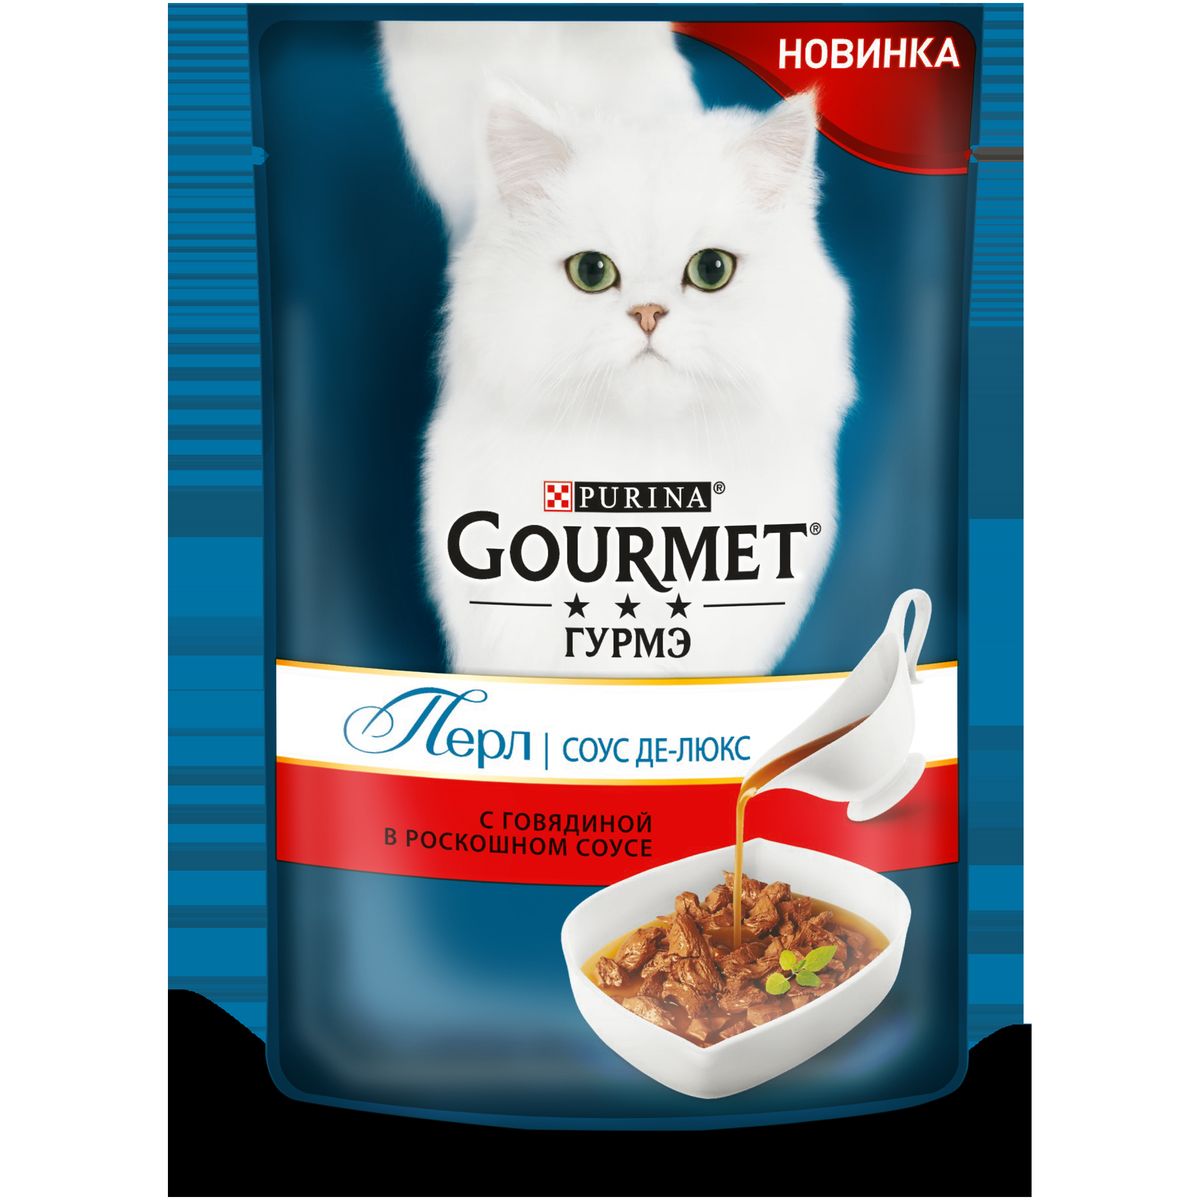 Корм для кошек gourmet (гурмет) — обзор и описание линейки, состав, виды, плюсы и минусы